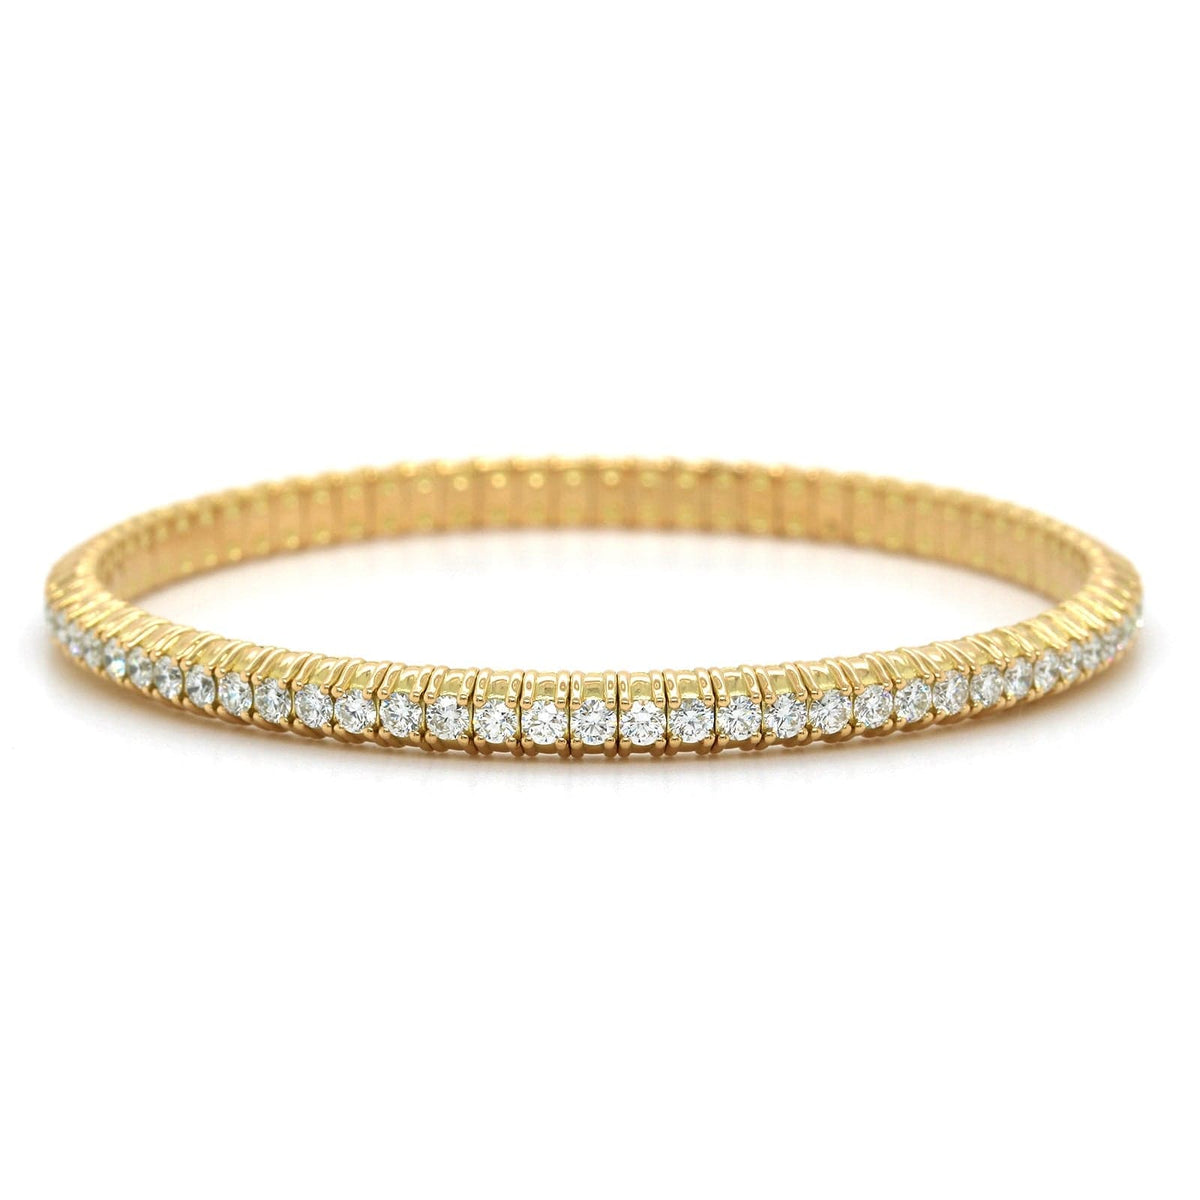 18K Yellow Gold Diamond Stretch Bracelet, Long's Jewelers